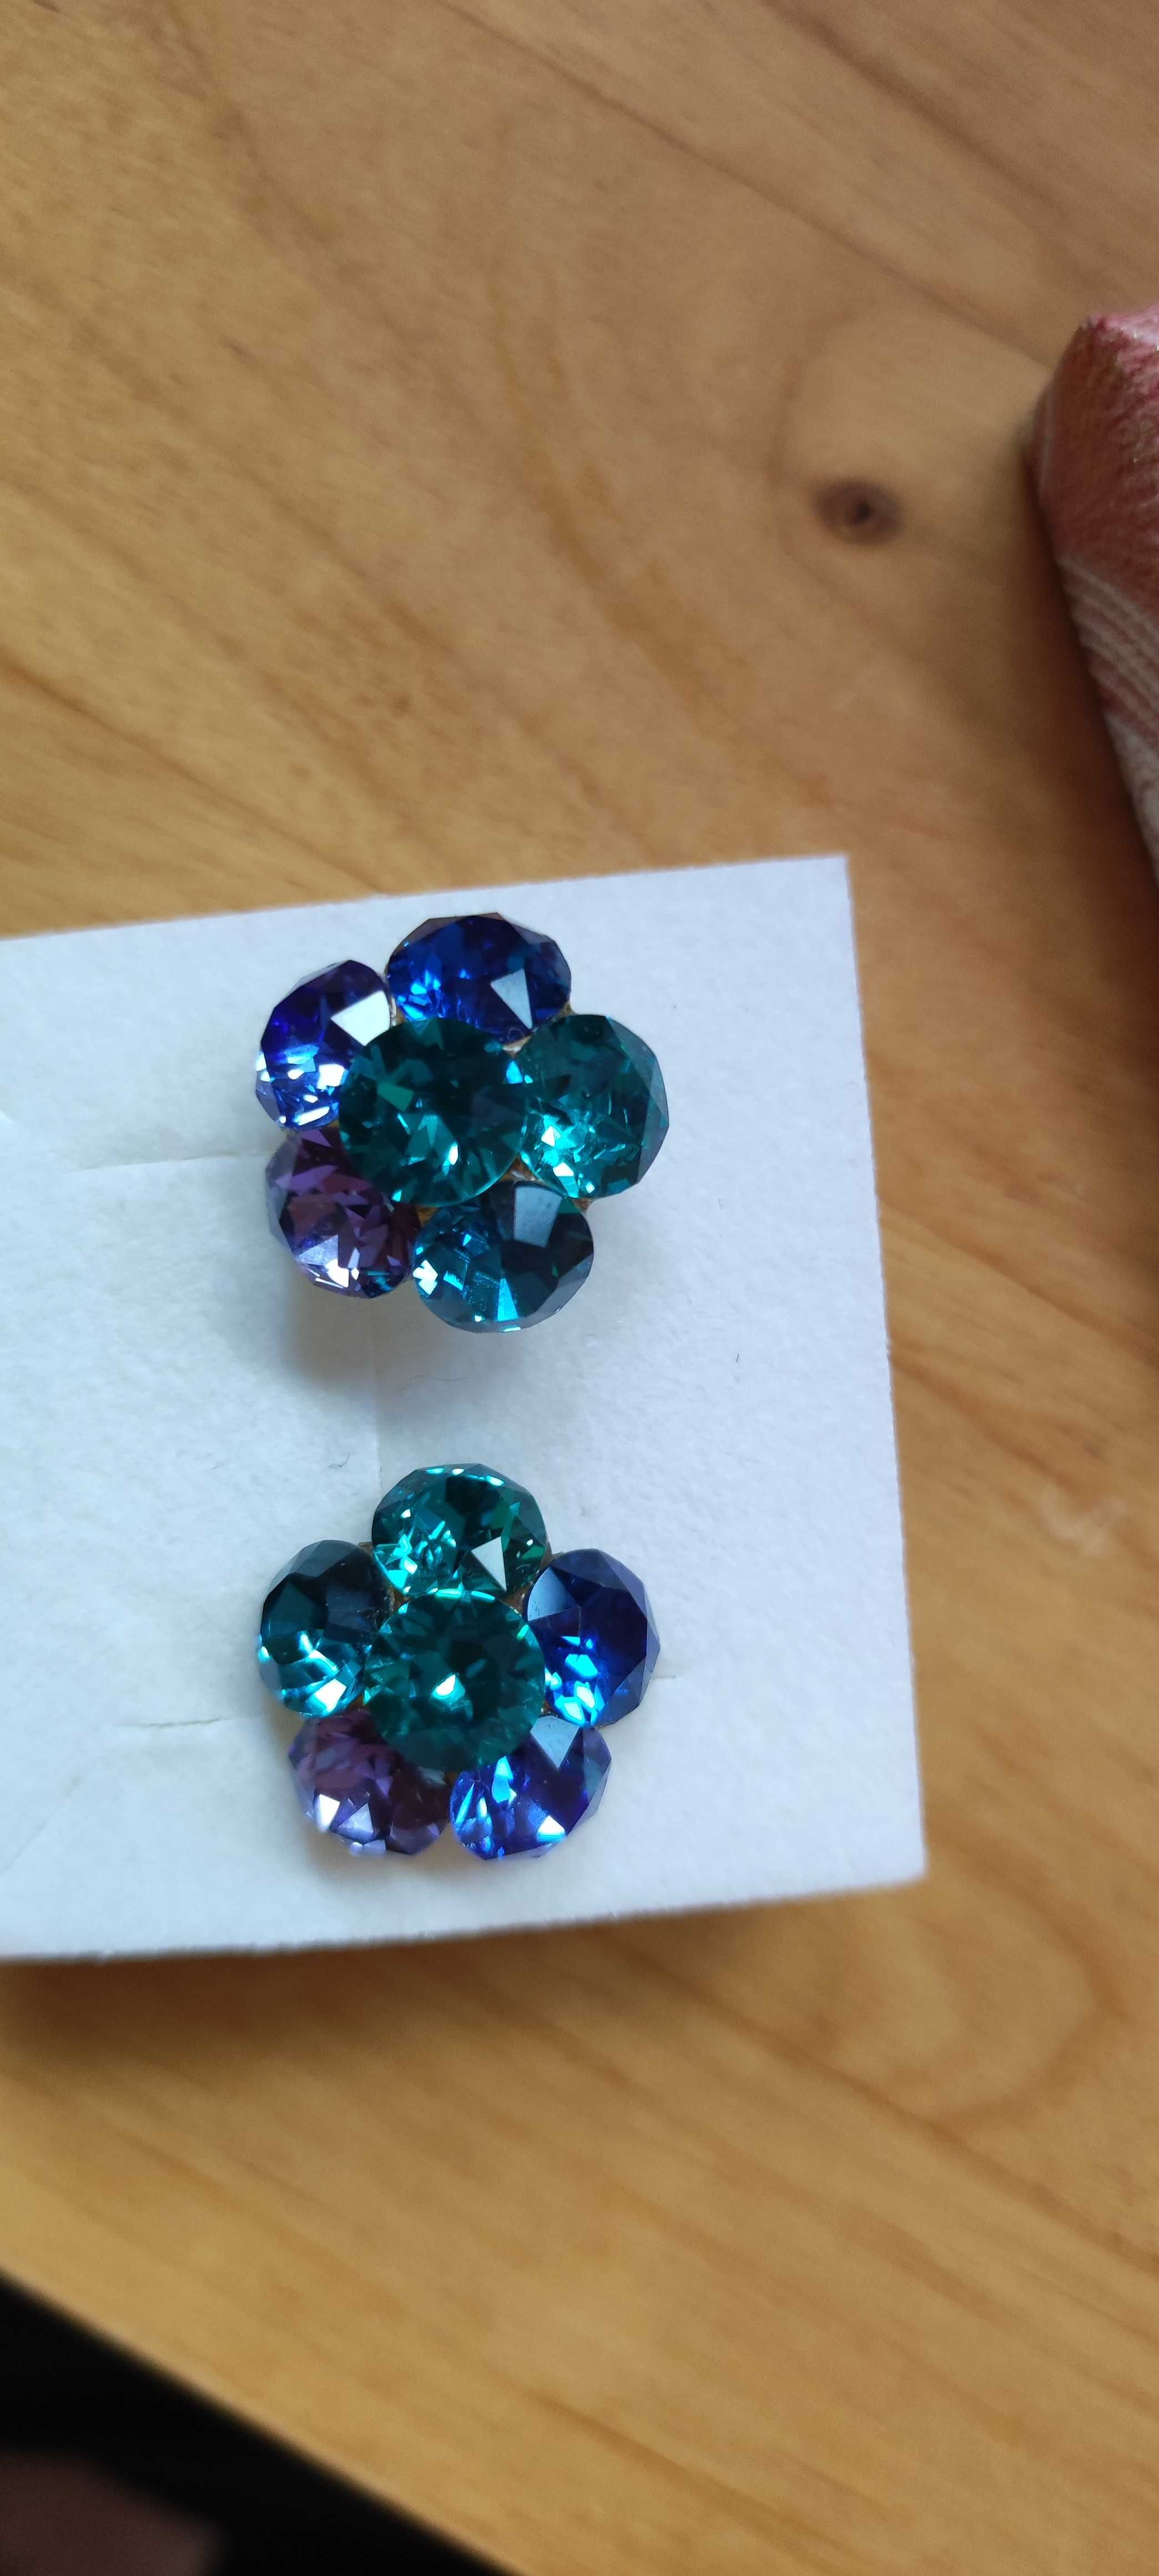 Cercei din argint cu cristale albastre, forma de floricica